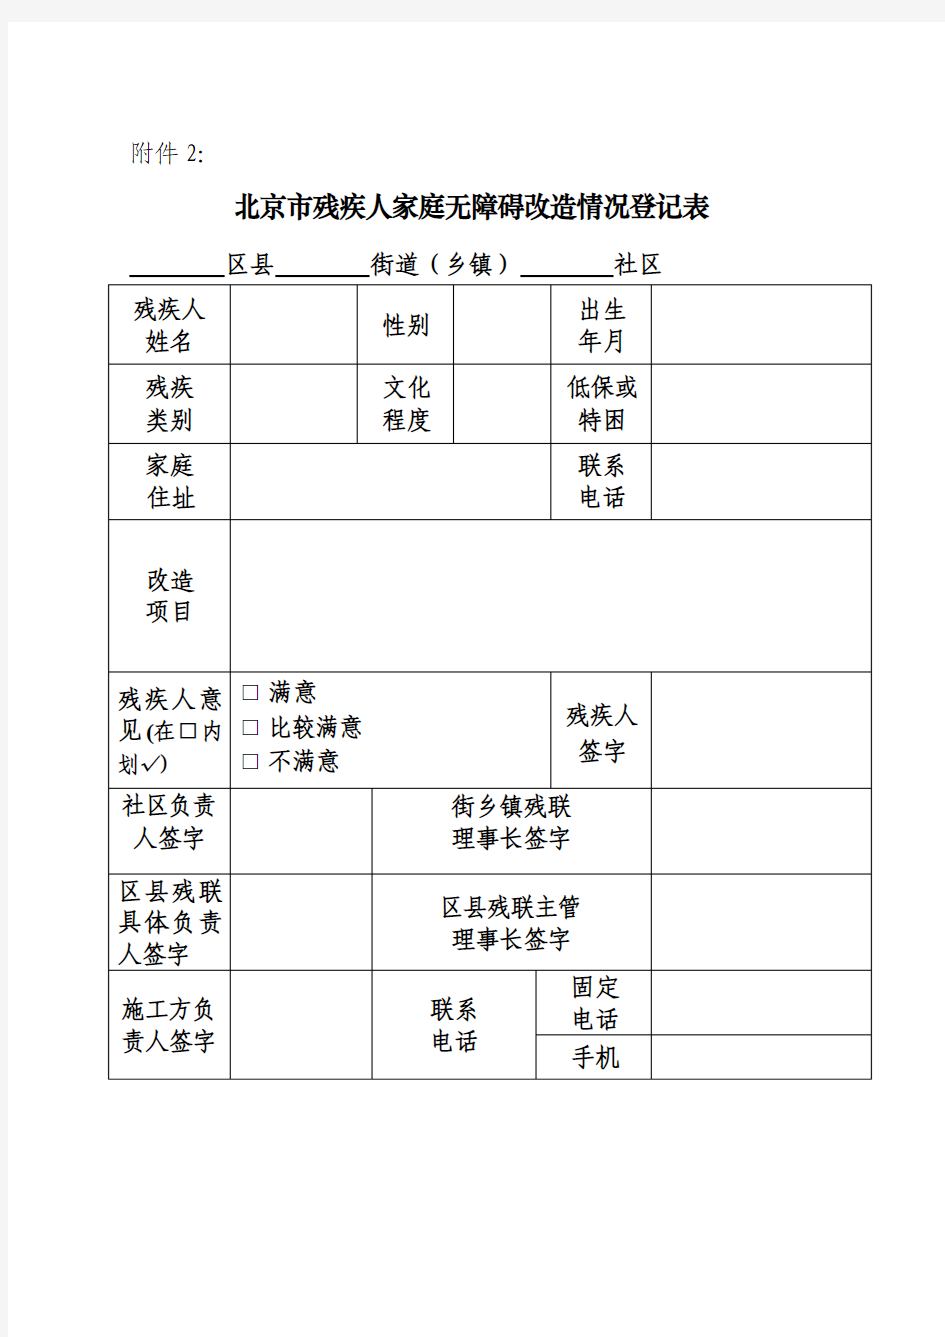 北京市残联关于做好残疾人家庭无障碍改造工作的通知(附件1-4表)